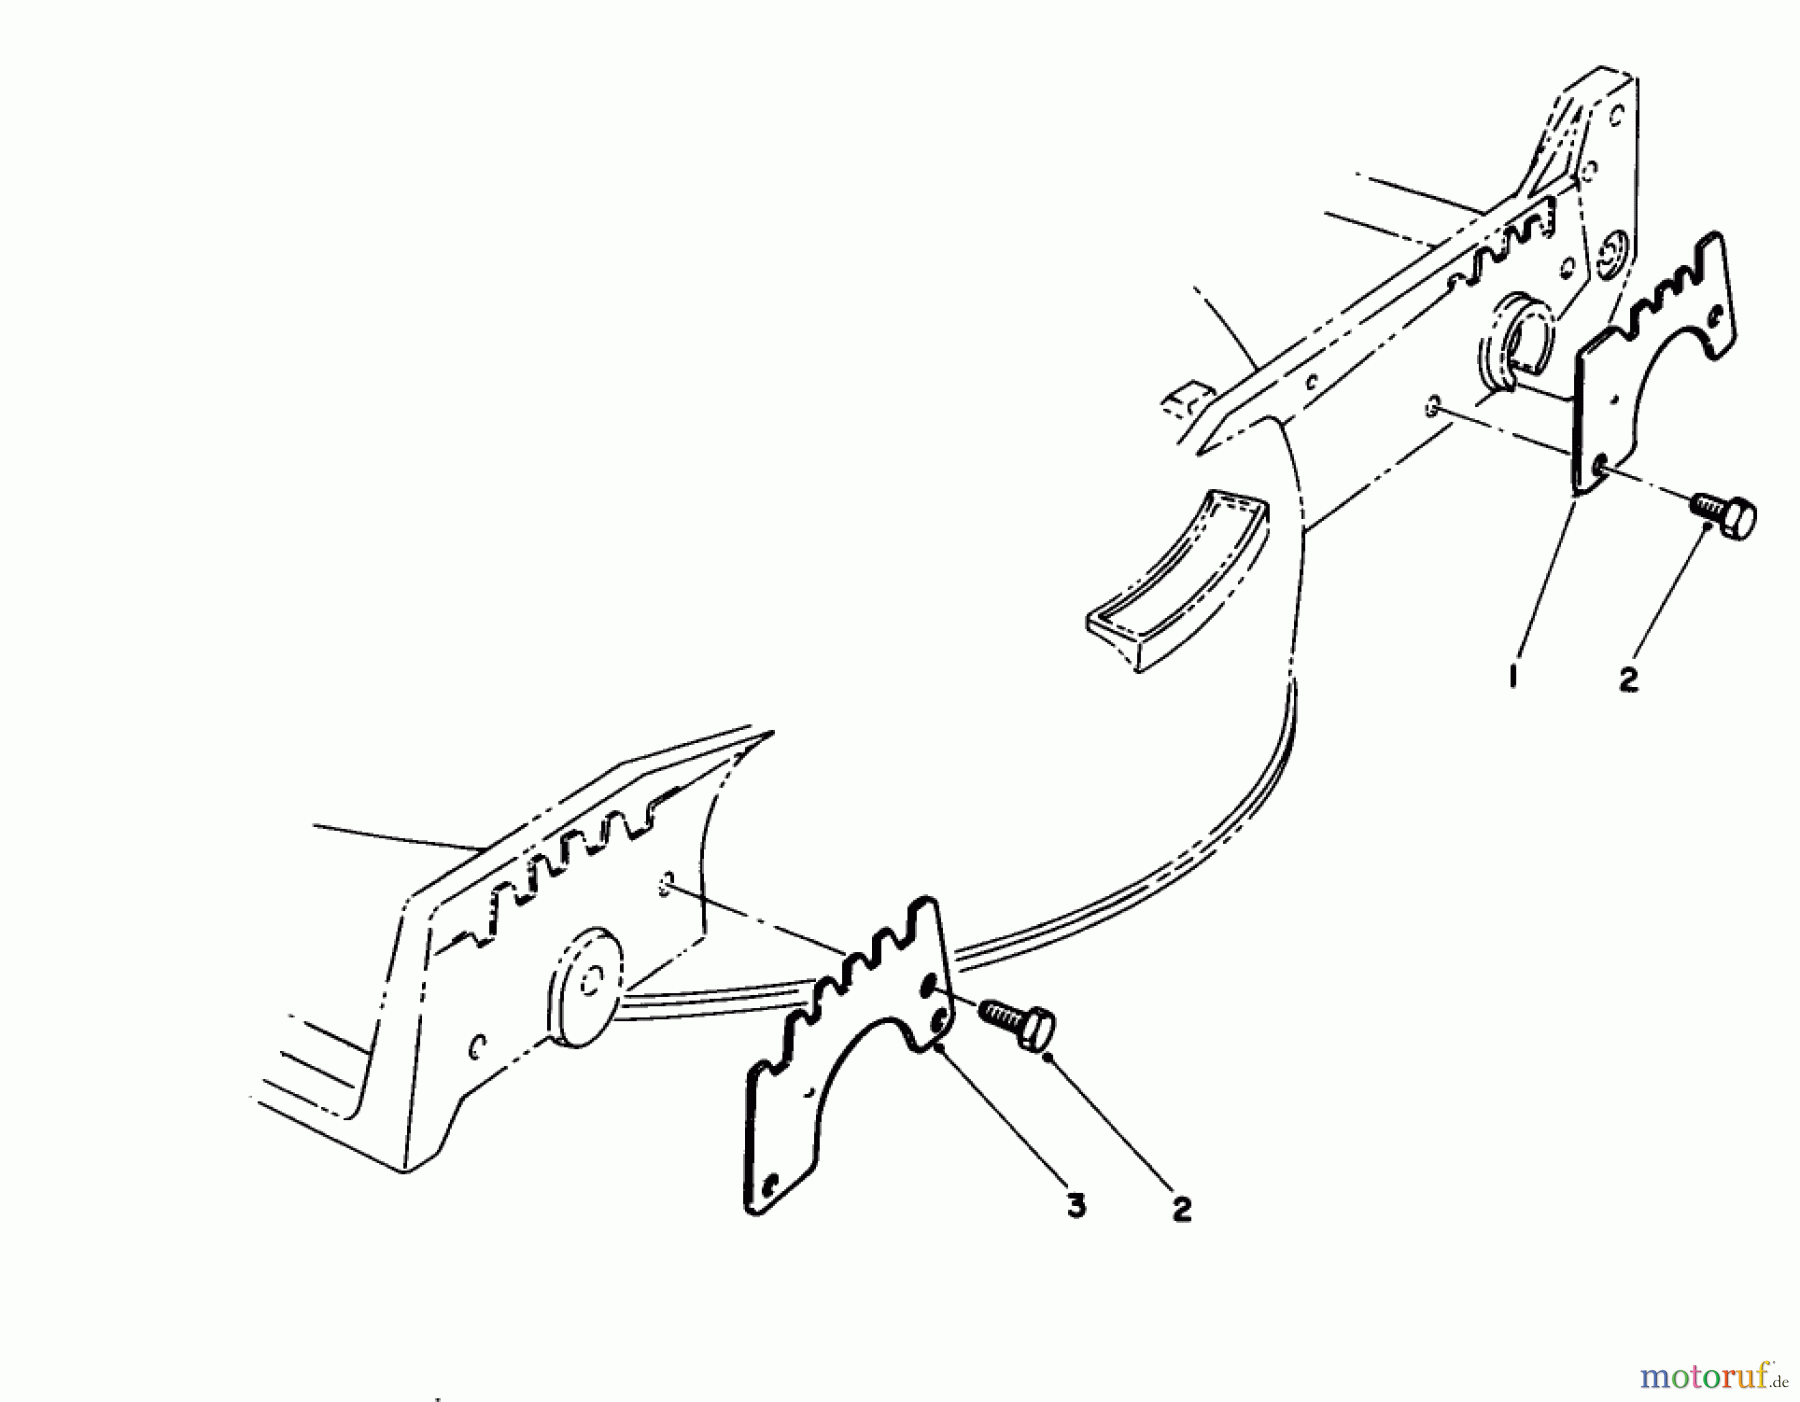  Toro Neu Mowers, Walk-Behind Seite 1 20214 - Toro Lawnmower, 1992 (2000001-2999999) WEAR PLATE MODEL NO. 49-4080 (OPTIONAL)